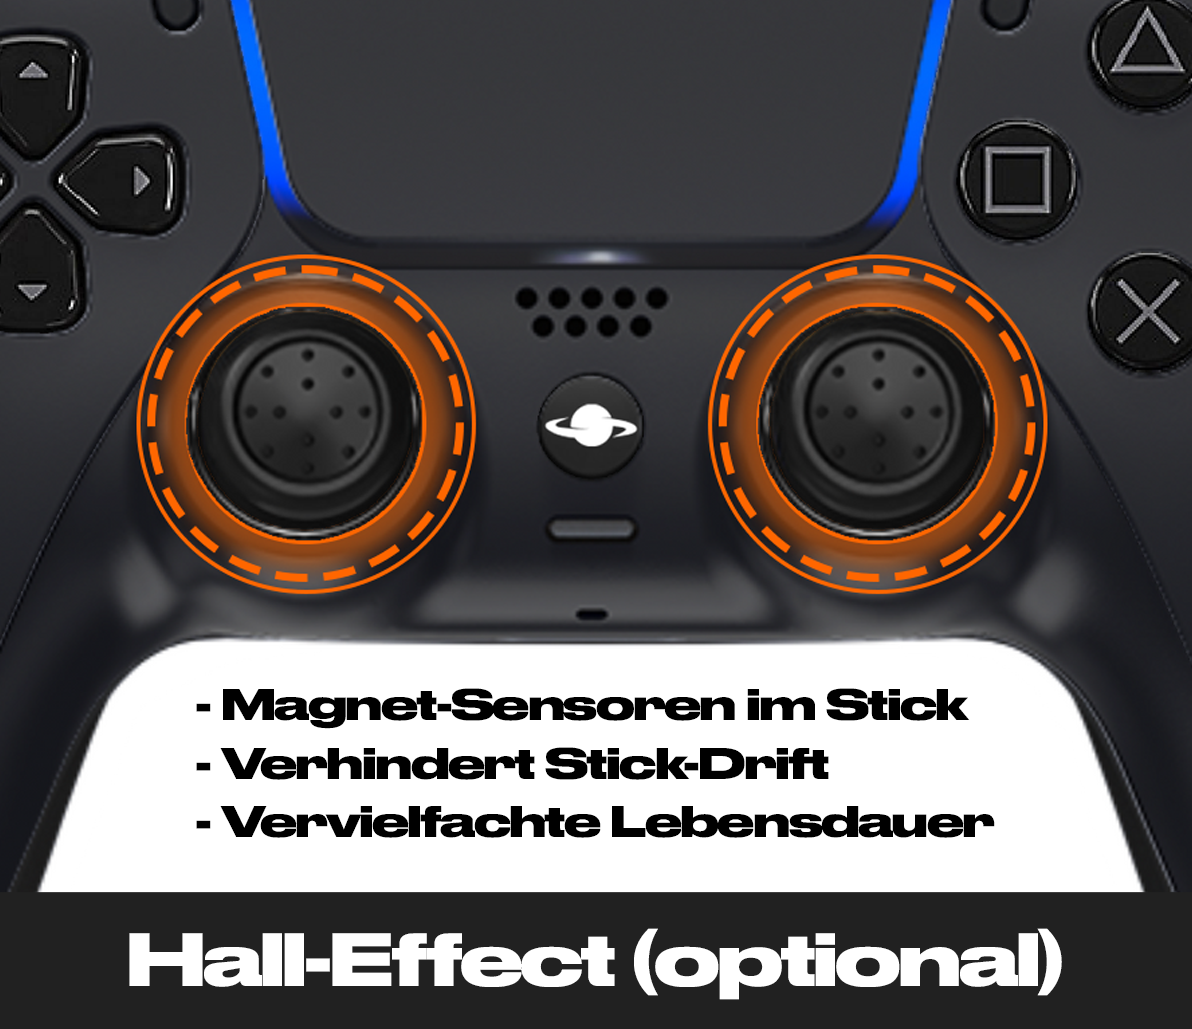 PS5 Custom Controller 'Dark Demon'